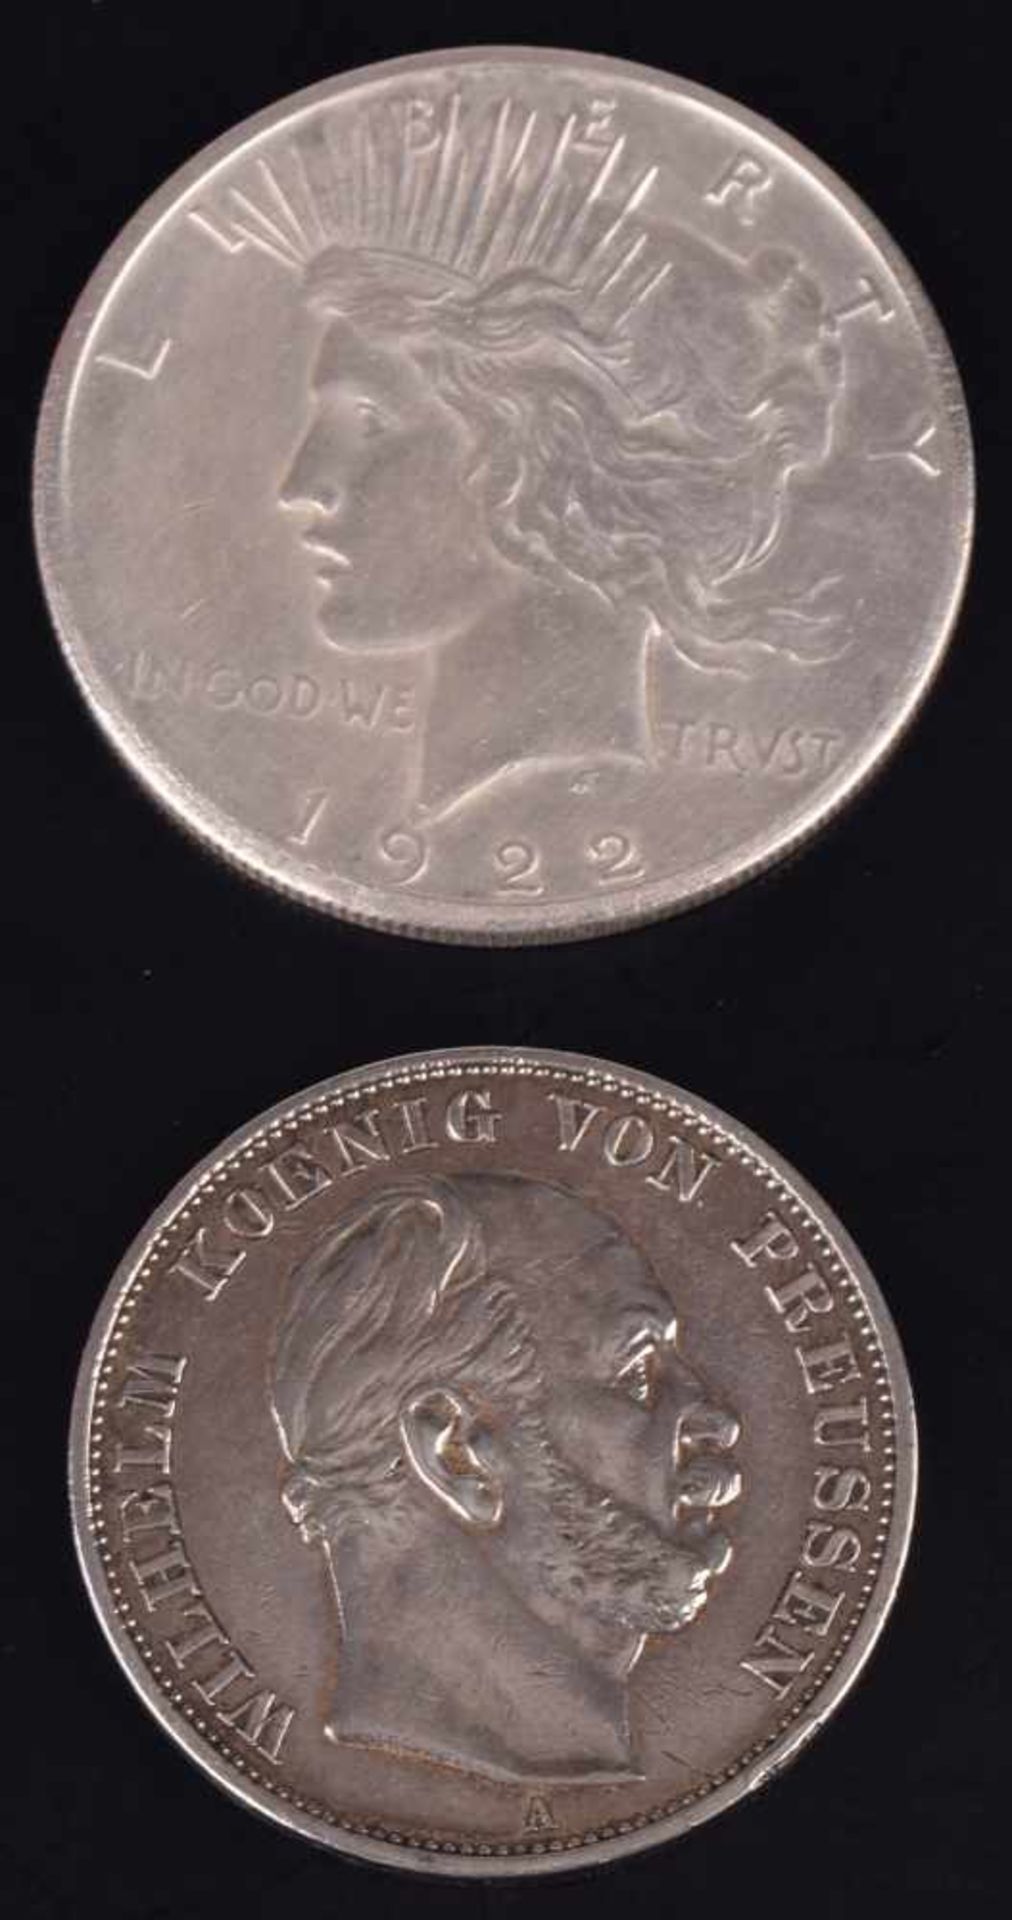 Paar Silbermünzen USA - Preußen 1 x Peace-Silber-Dollar 1922 USA, D ca. 38 mm, ca. 26,7 g, av. - Bild 3 aus 3